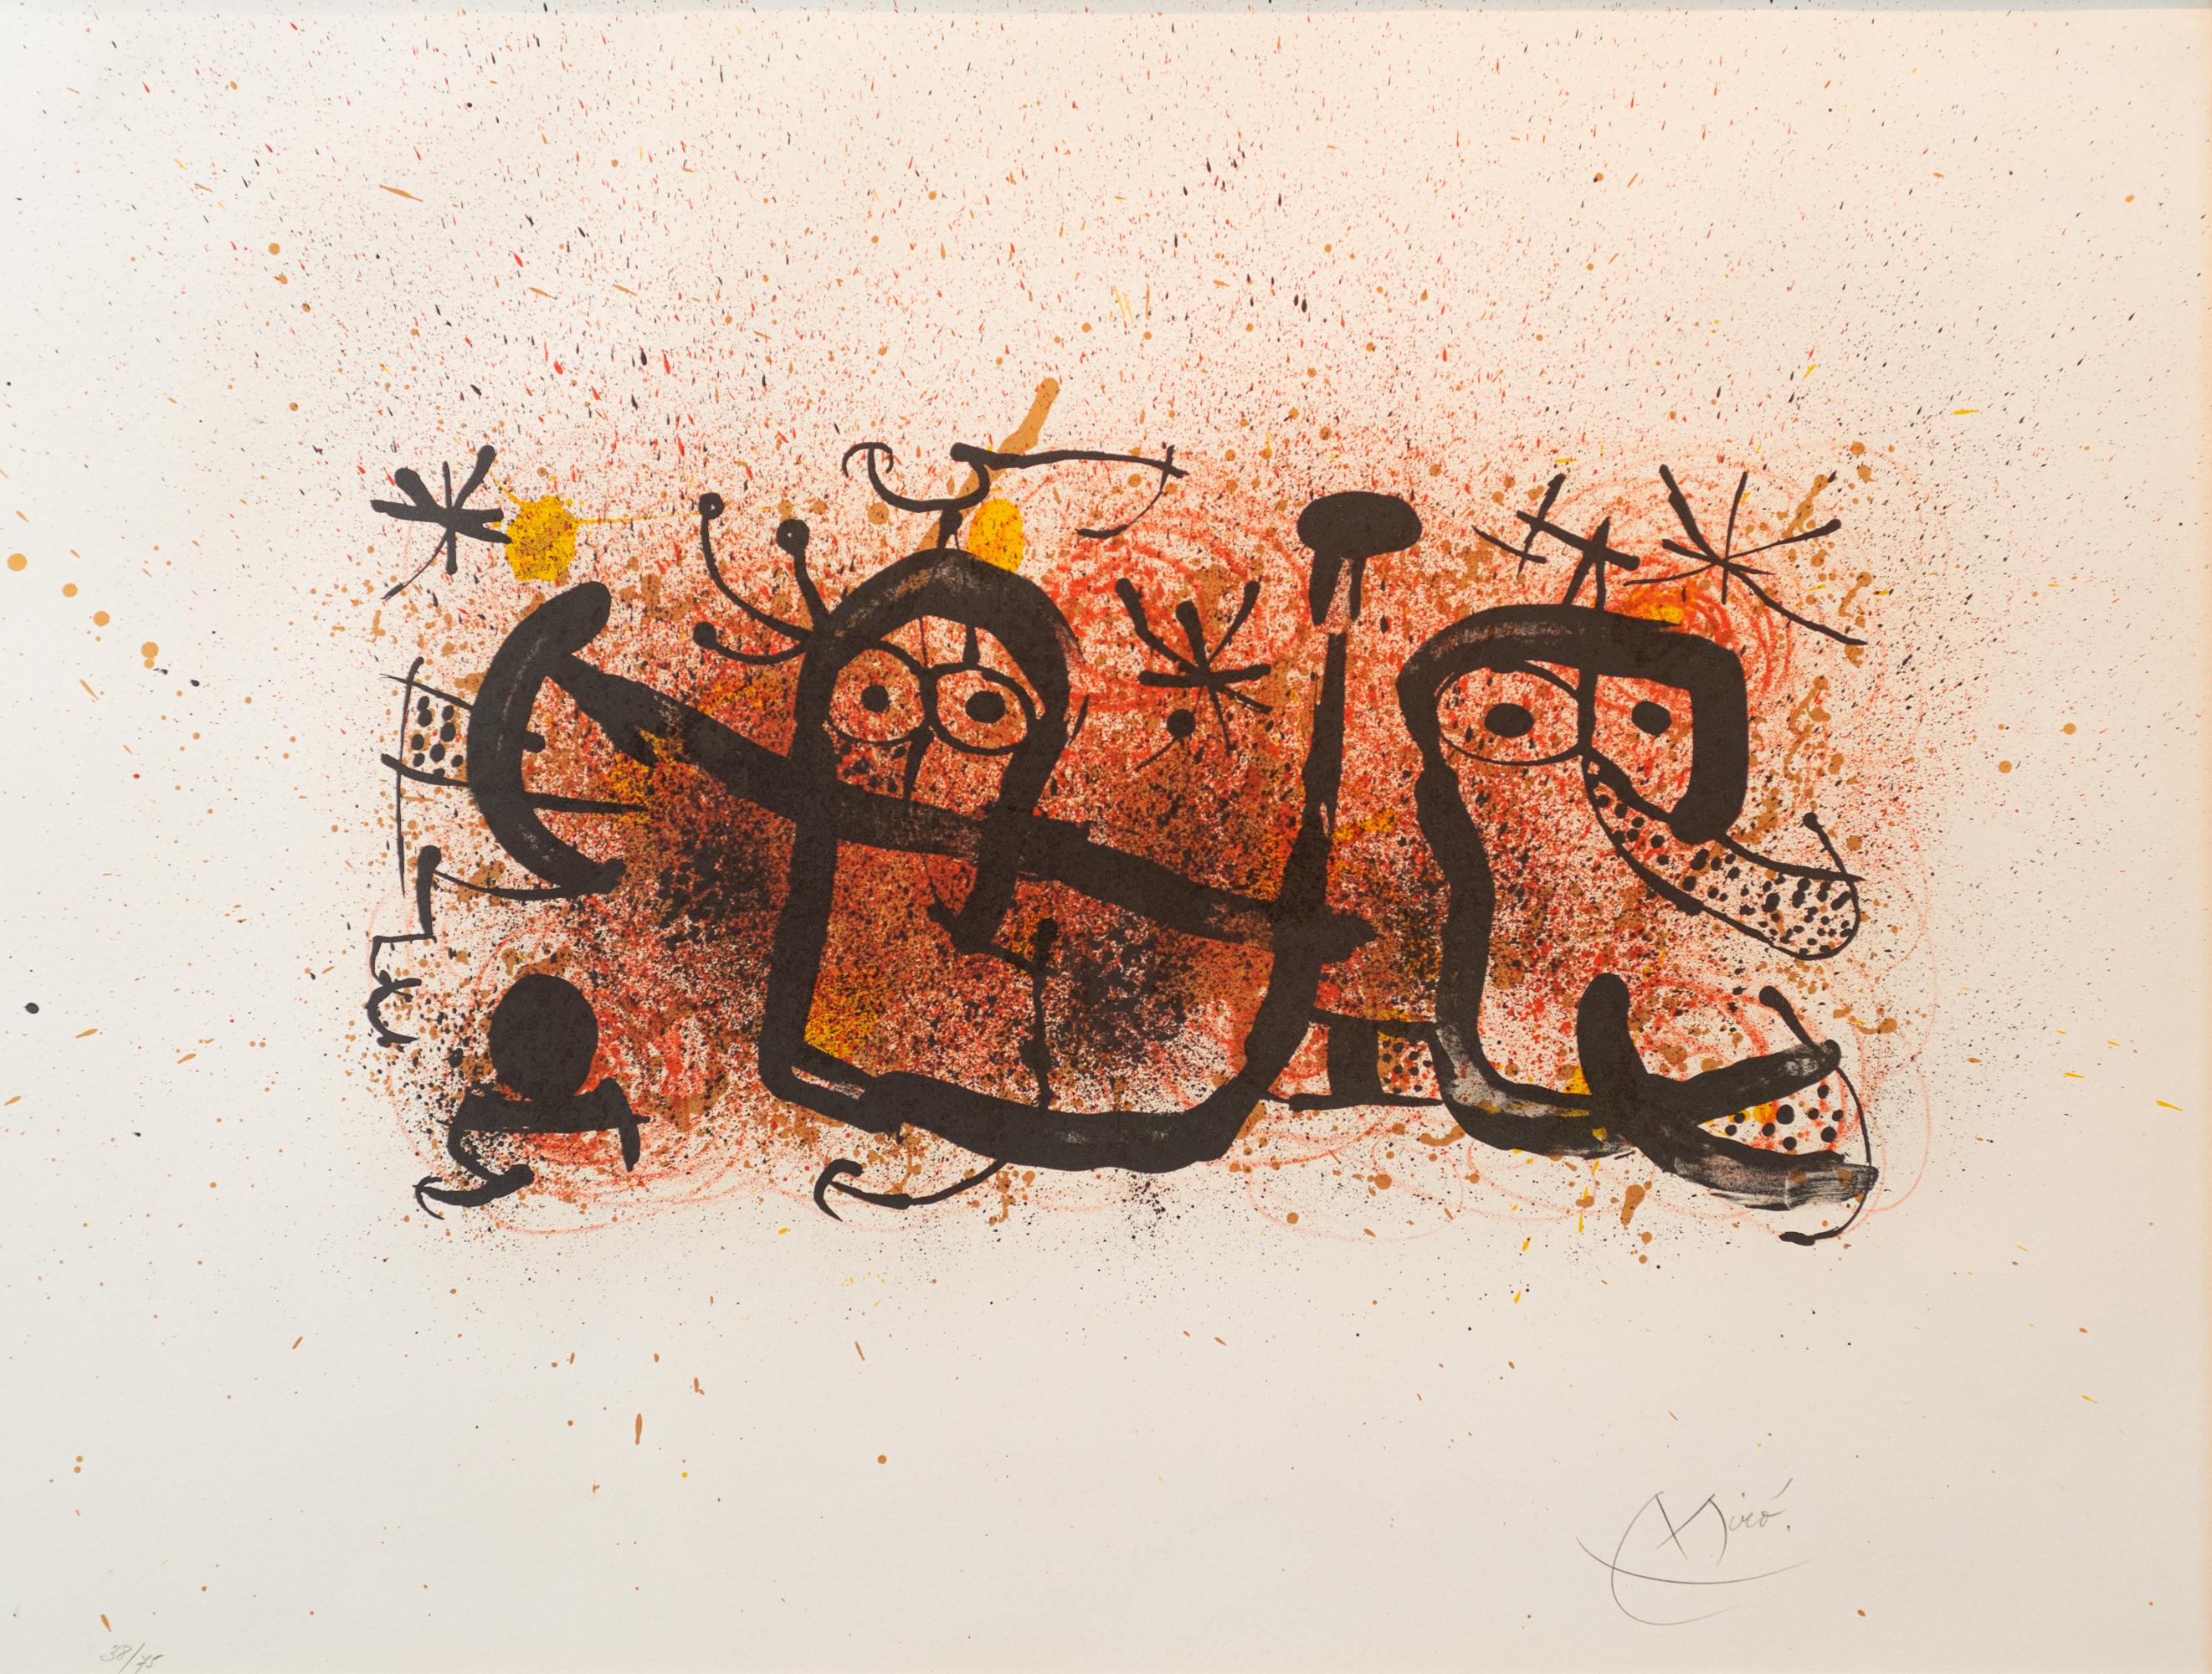 Joan Miró Abstract Print – Ma de Proverbis